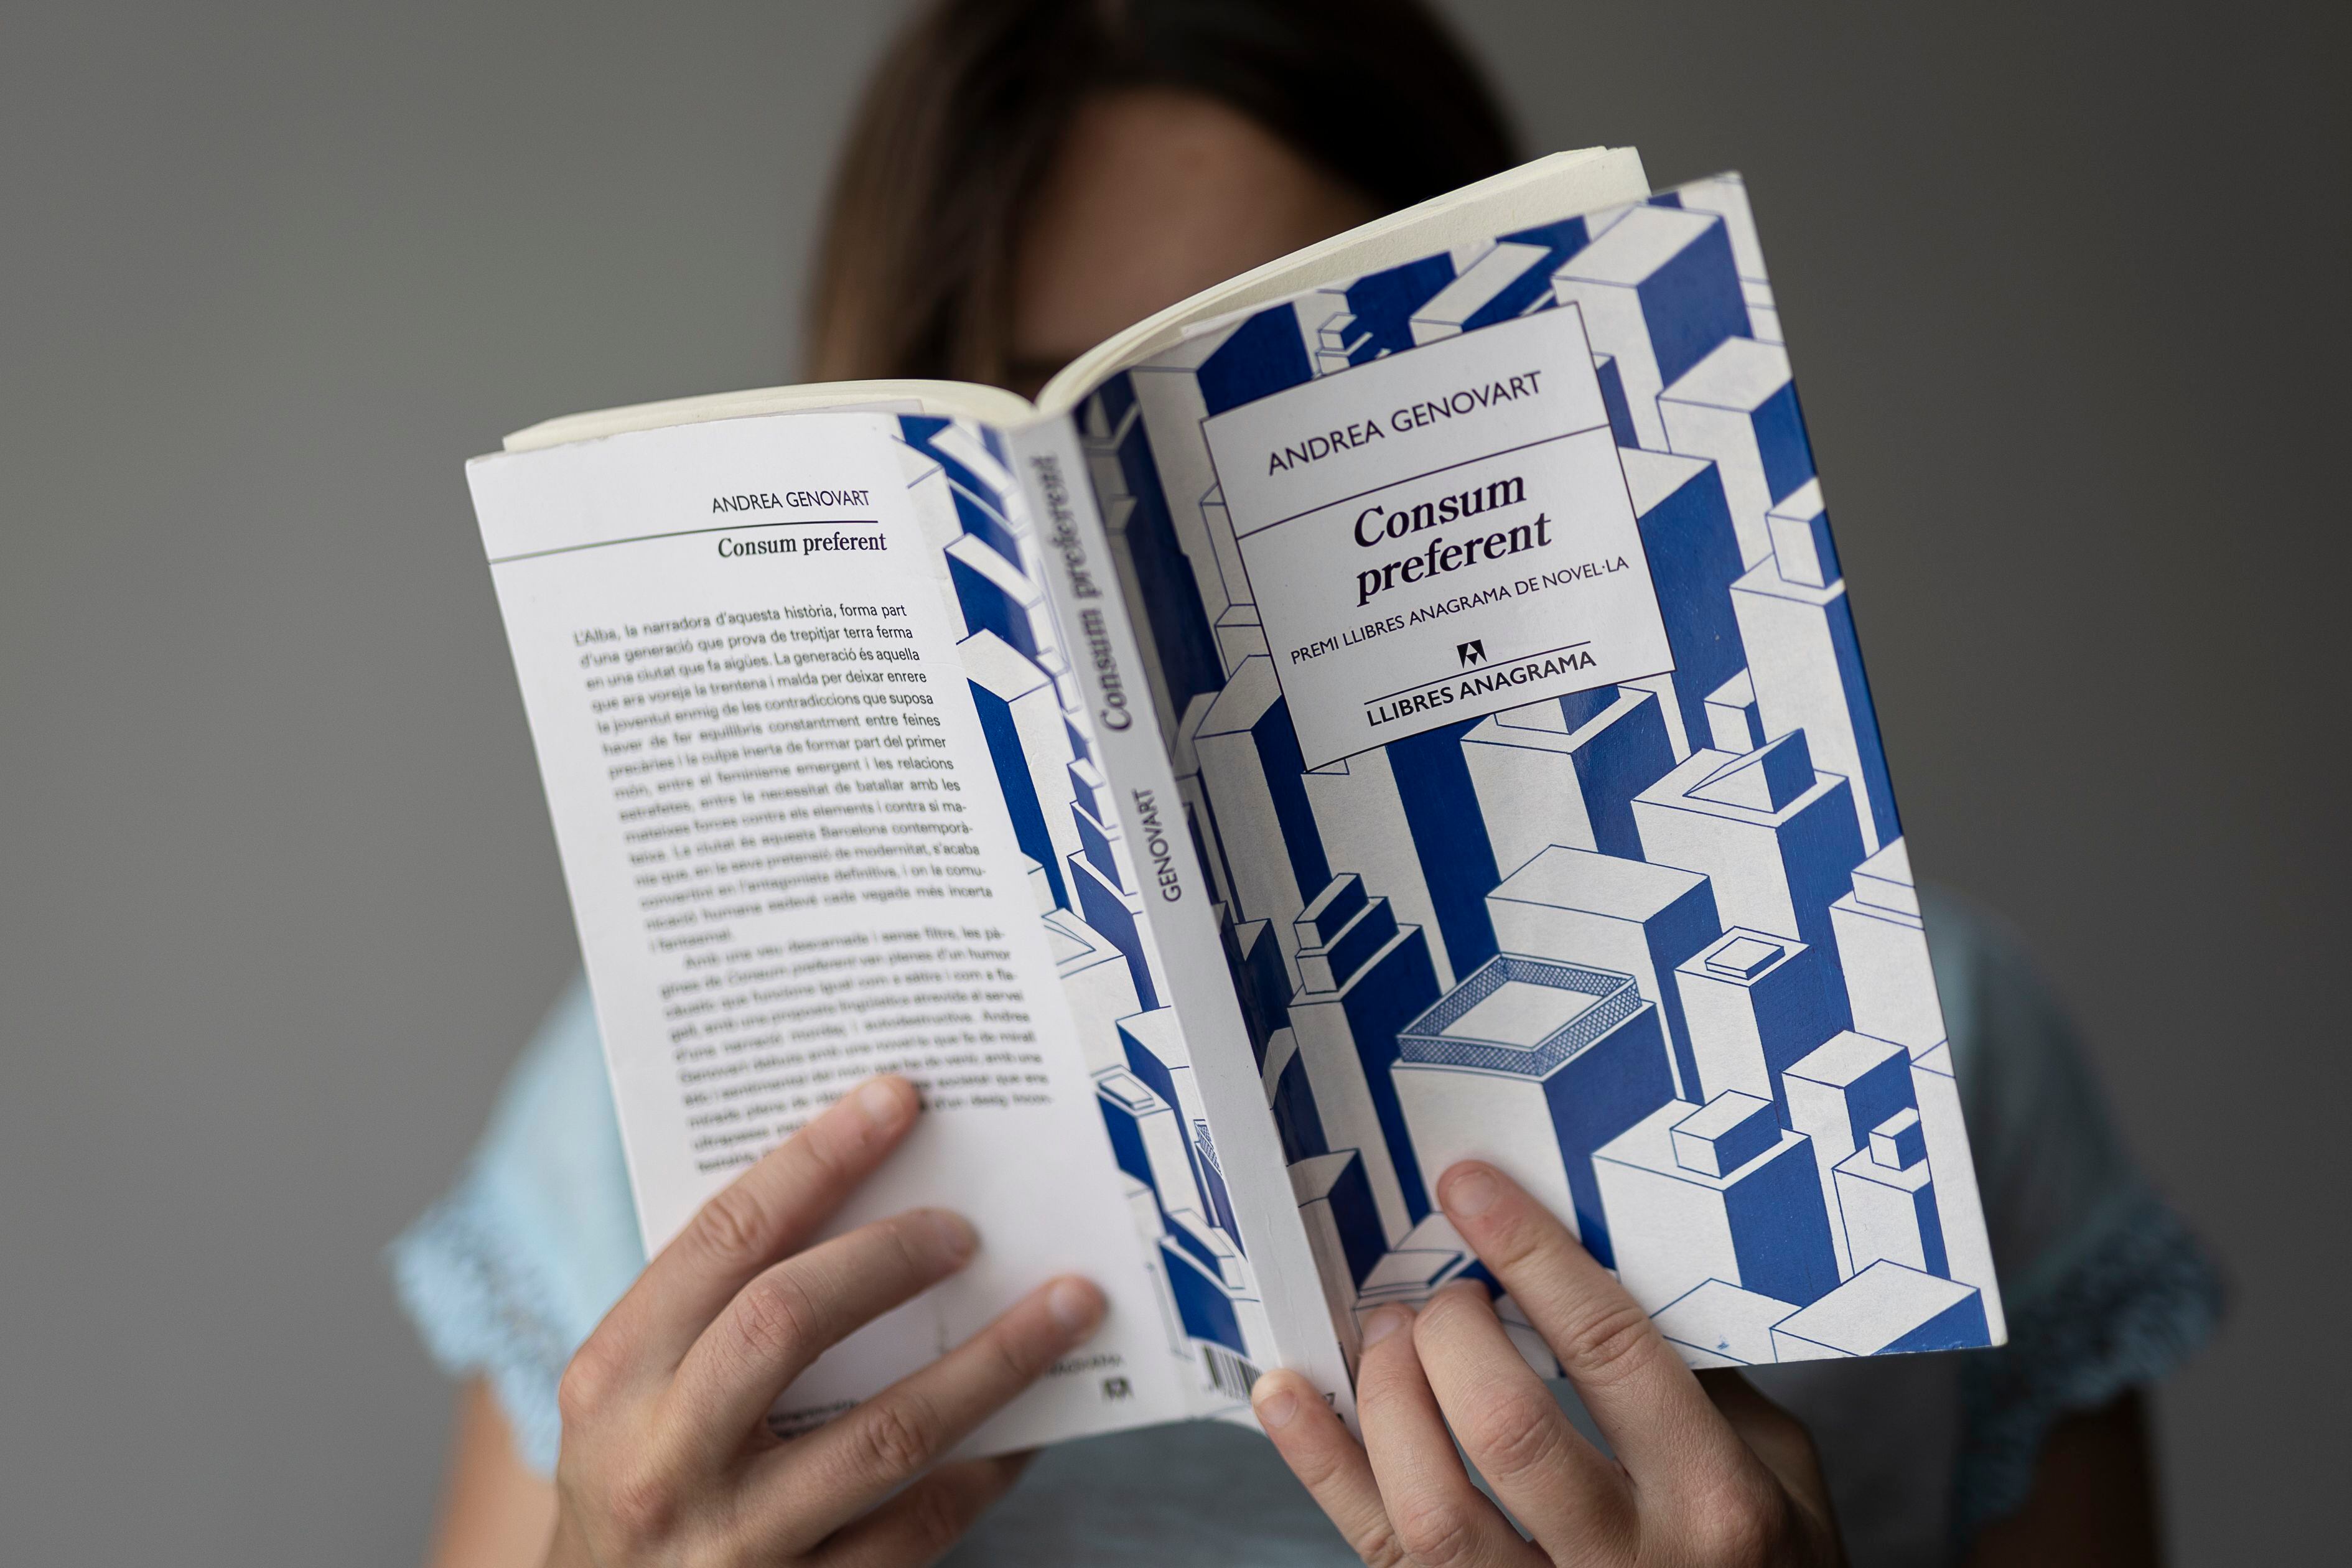 Una joven lee el libro 'Consum preferent', de la escritora Andrea Genovart.